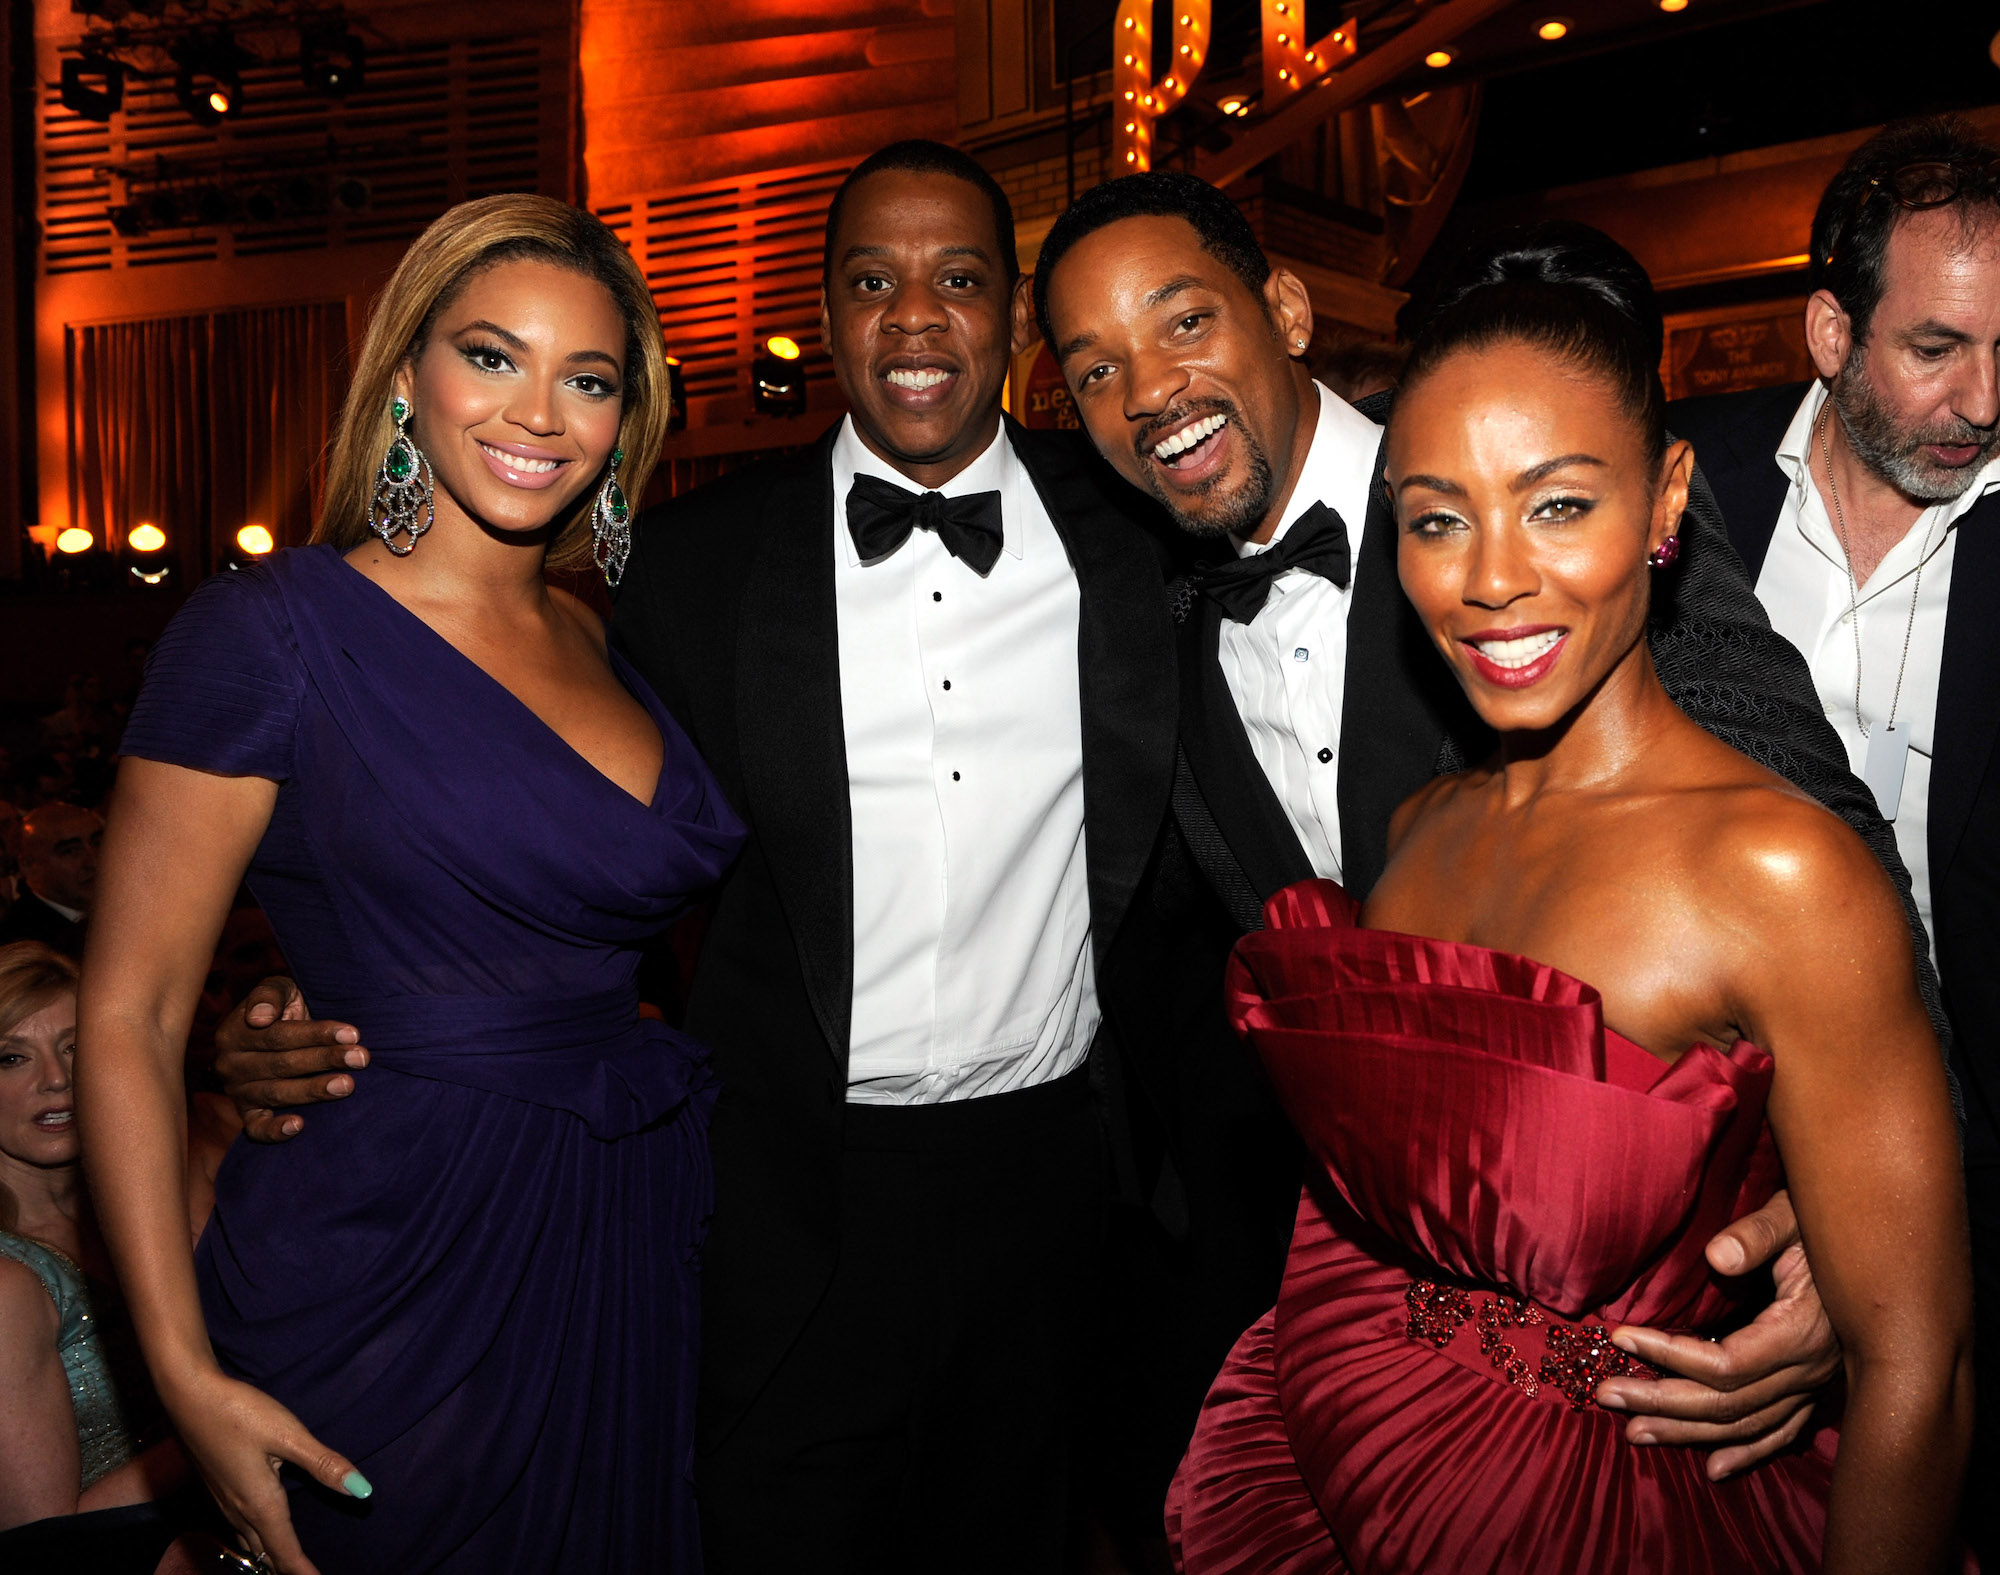 (L-R) Beyoncé, Jay-Z, Will Smith and Jada Pinkett Smith smiling